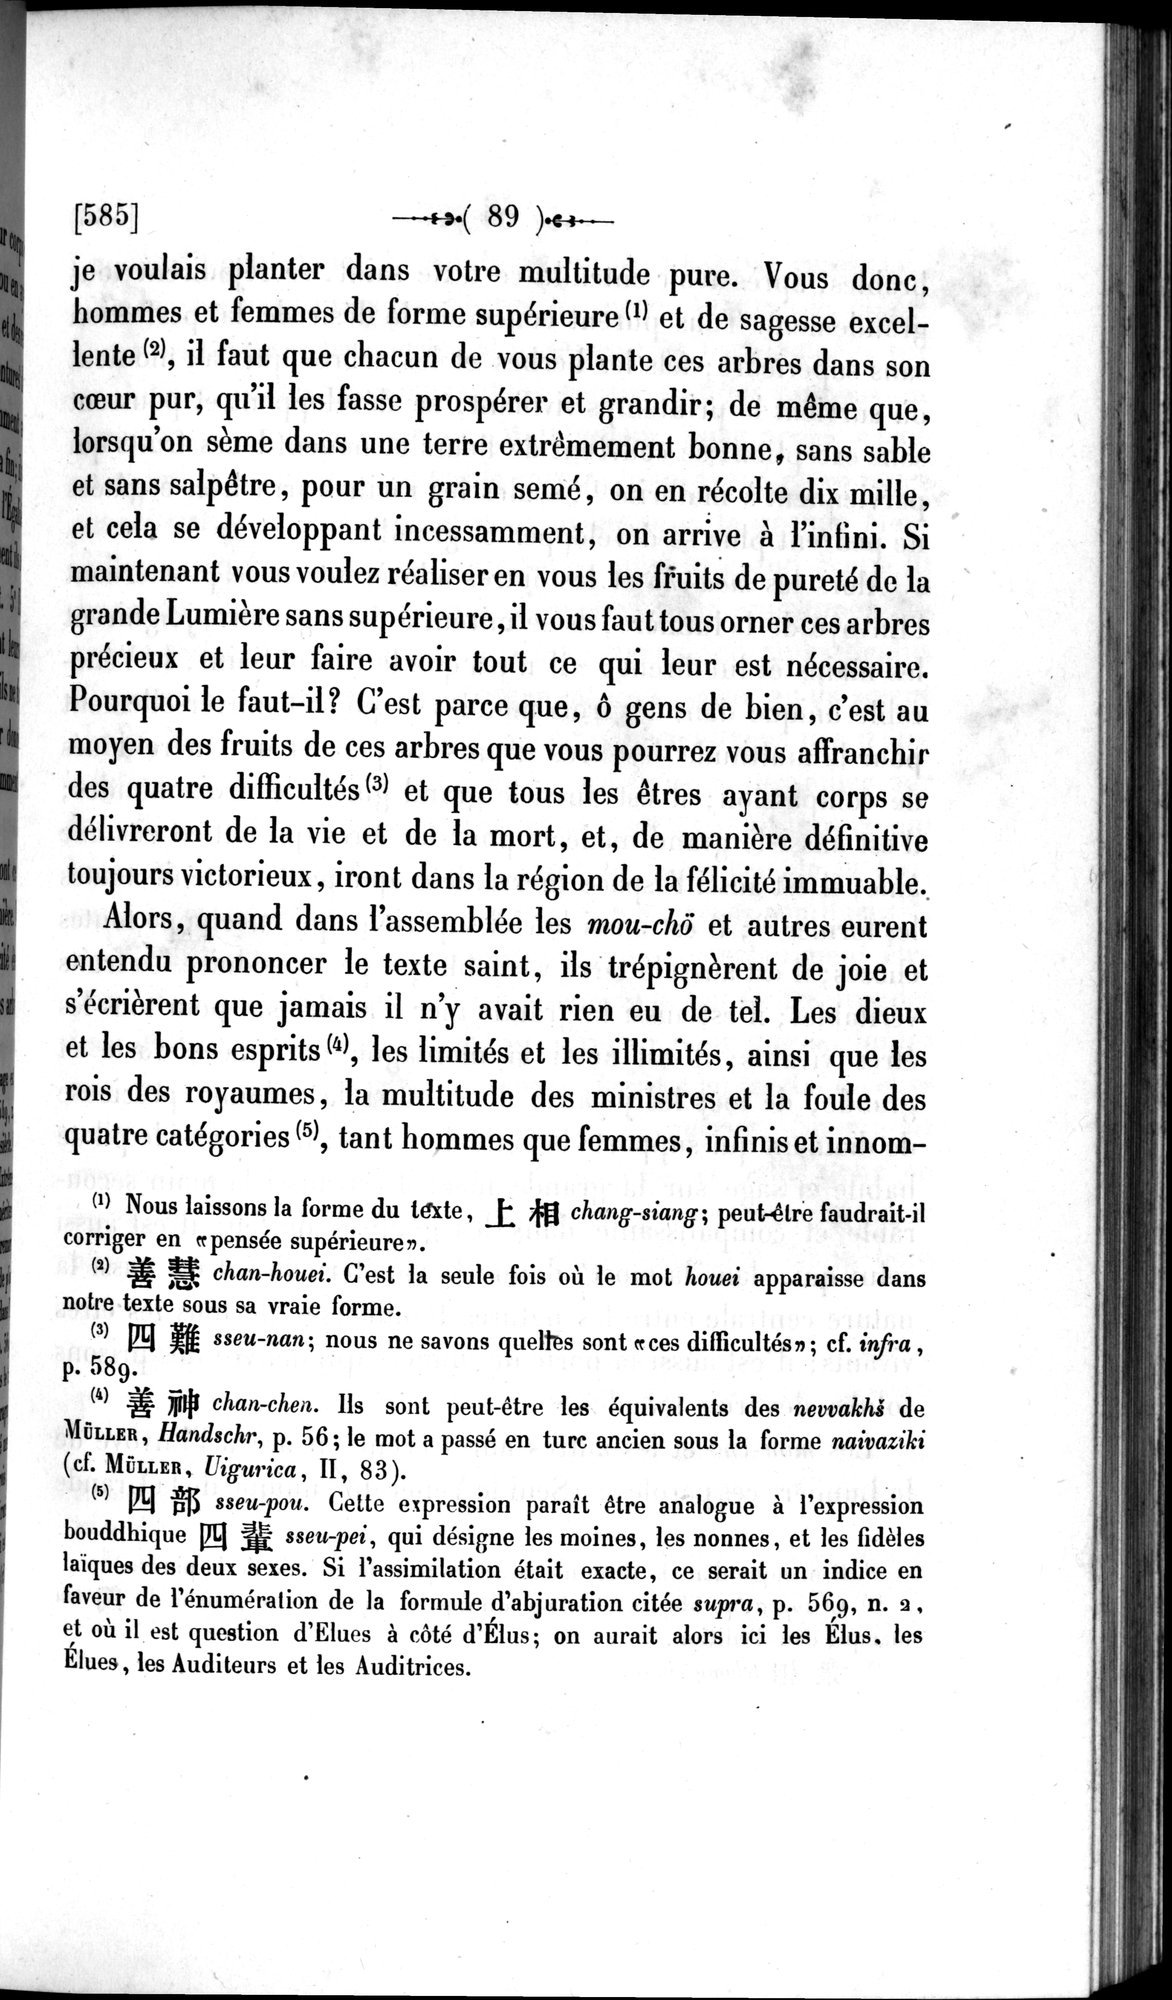 Un traité manichéen retrouvé en Chine : vol.1 / Page 99 (Grayscale High Resolution Image)